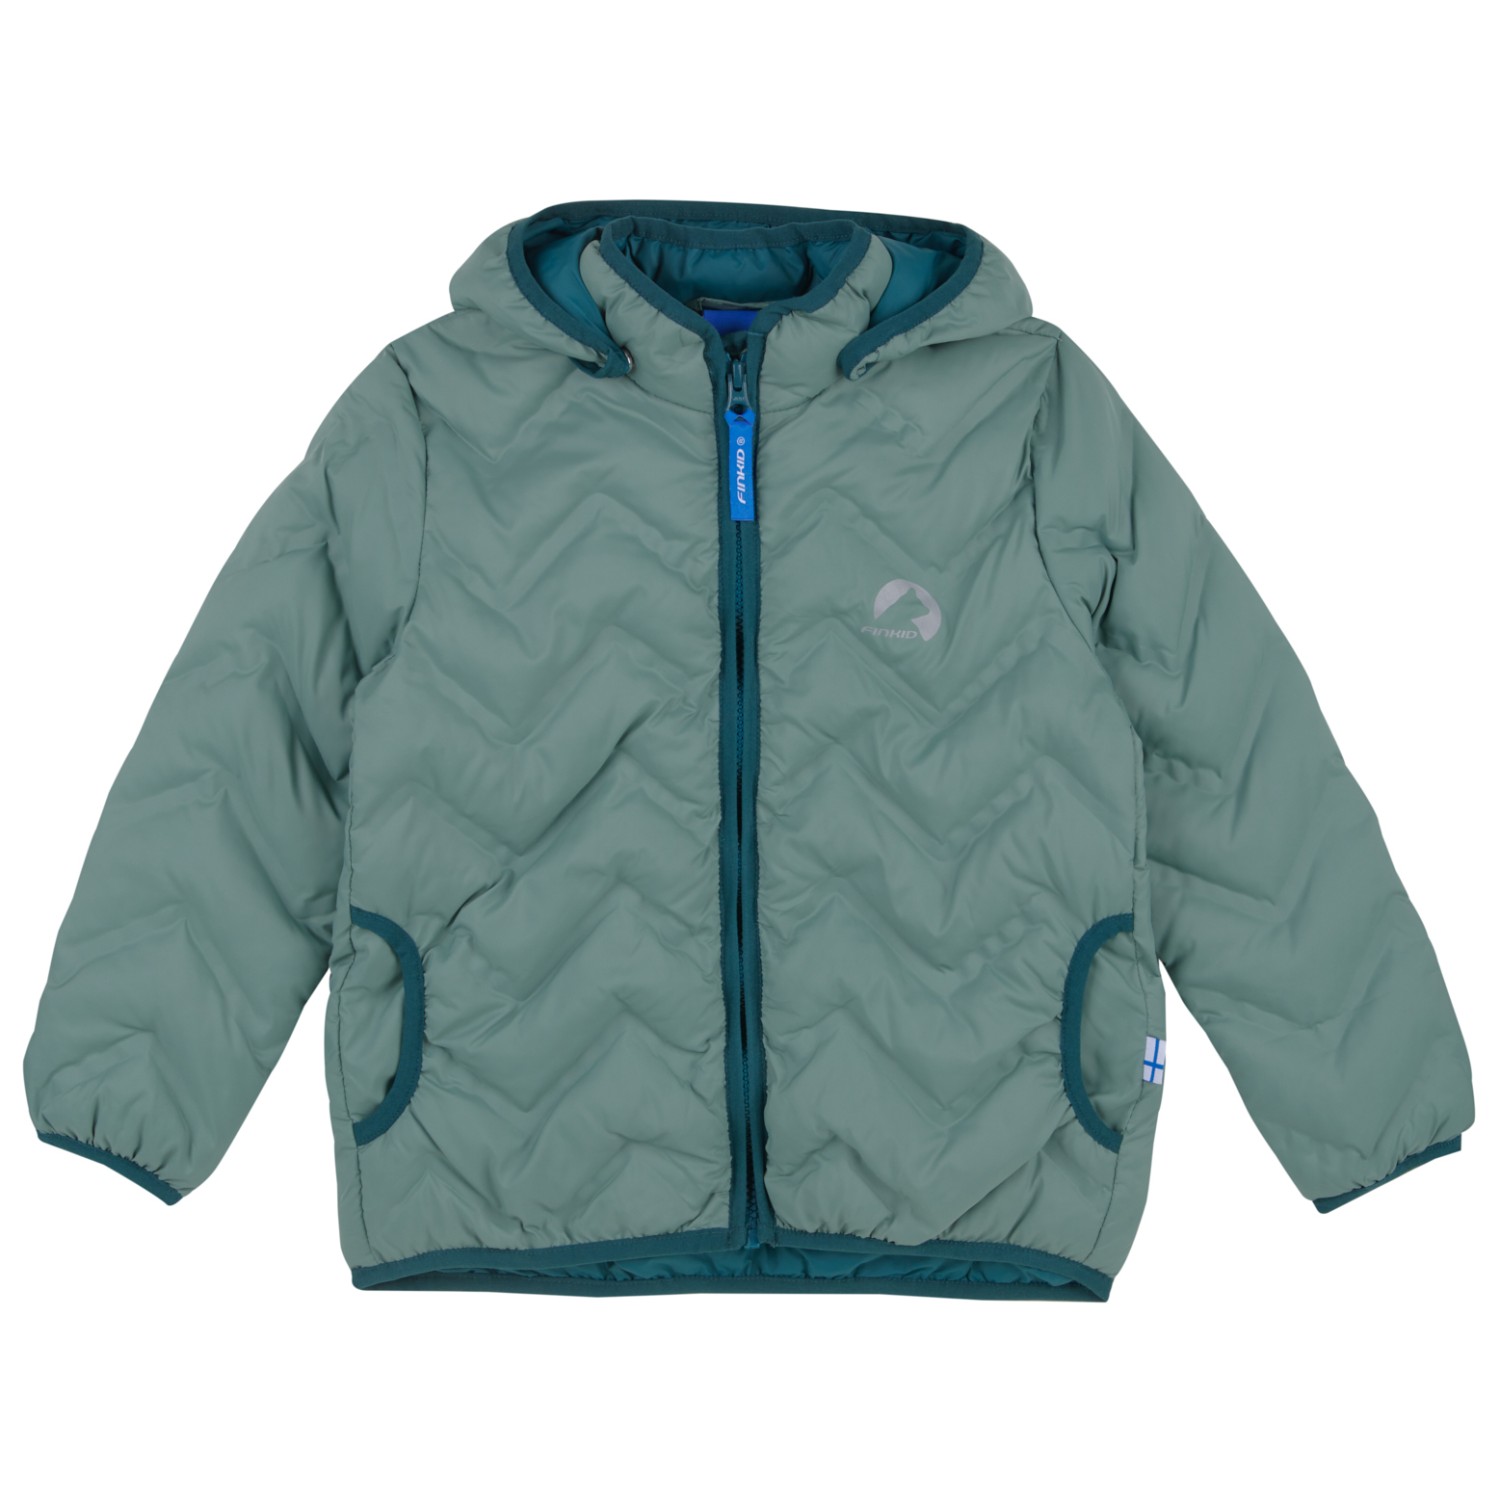 Куртка из синтетического волокна Finkid Kid's Vanukas Air, цвет Green Bay/Deep Teal